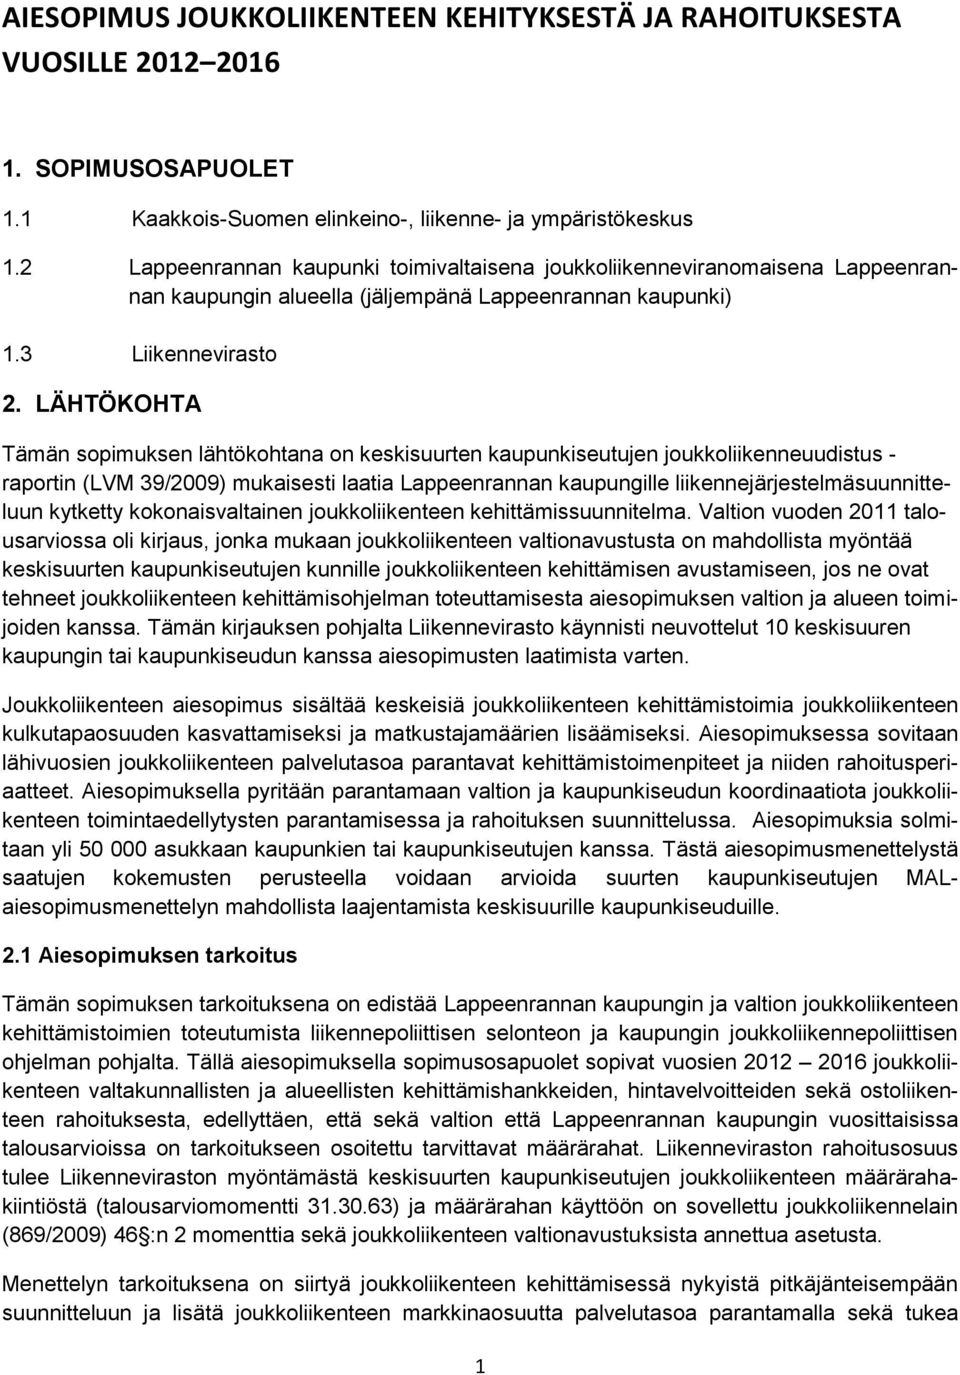 LÄHTÖKOHTA Tämän sopimuksen lähtökohtana on keskisuurten kaupunkiseutujen joukkoliikenneuudistus - raportin (LVM 39/2009) mukaisesti laatia Lappeenrannan kaupungille liikennejärjestelmäsuunnitteluun